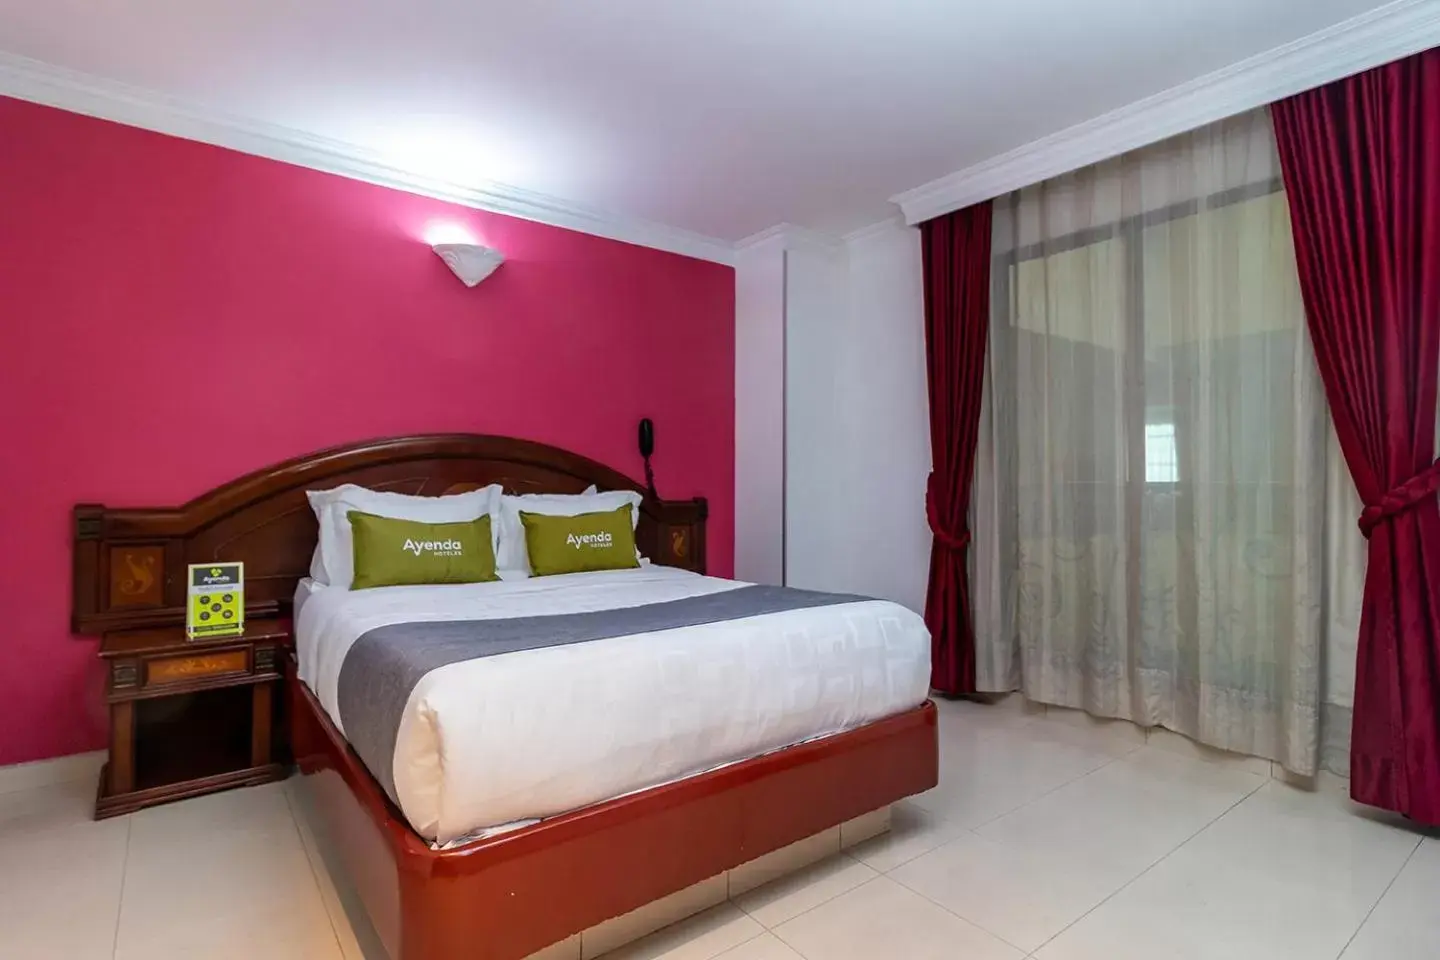 Bed in Lavid Hotel Palacio Real